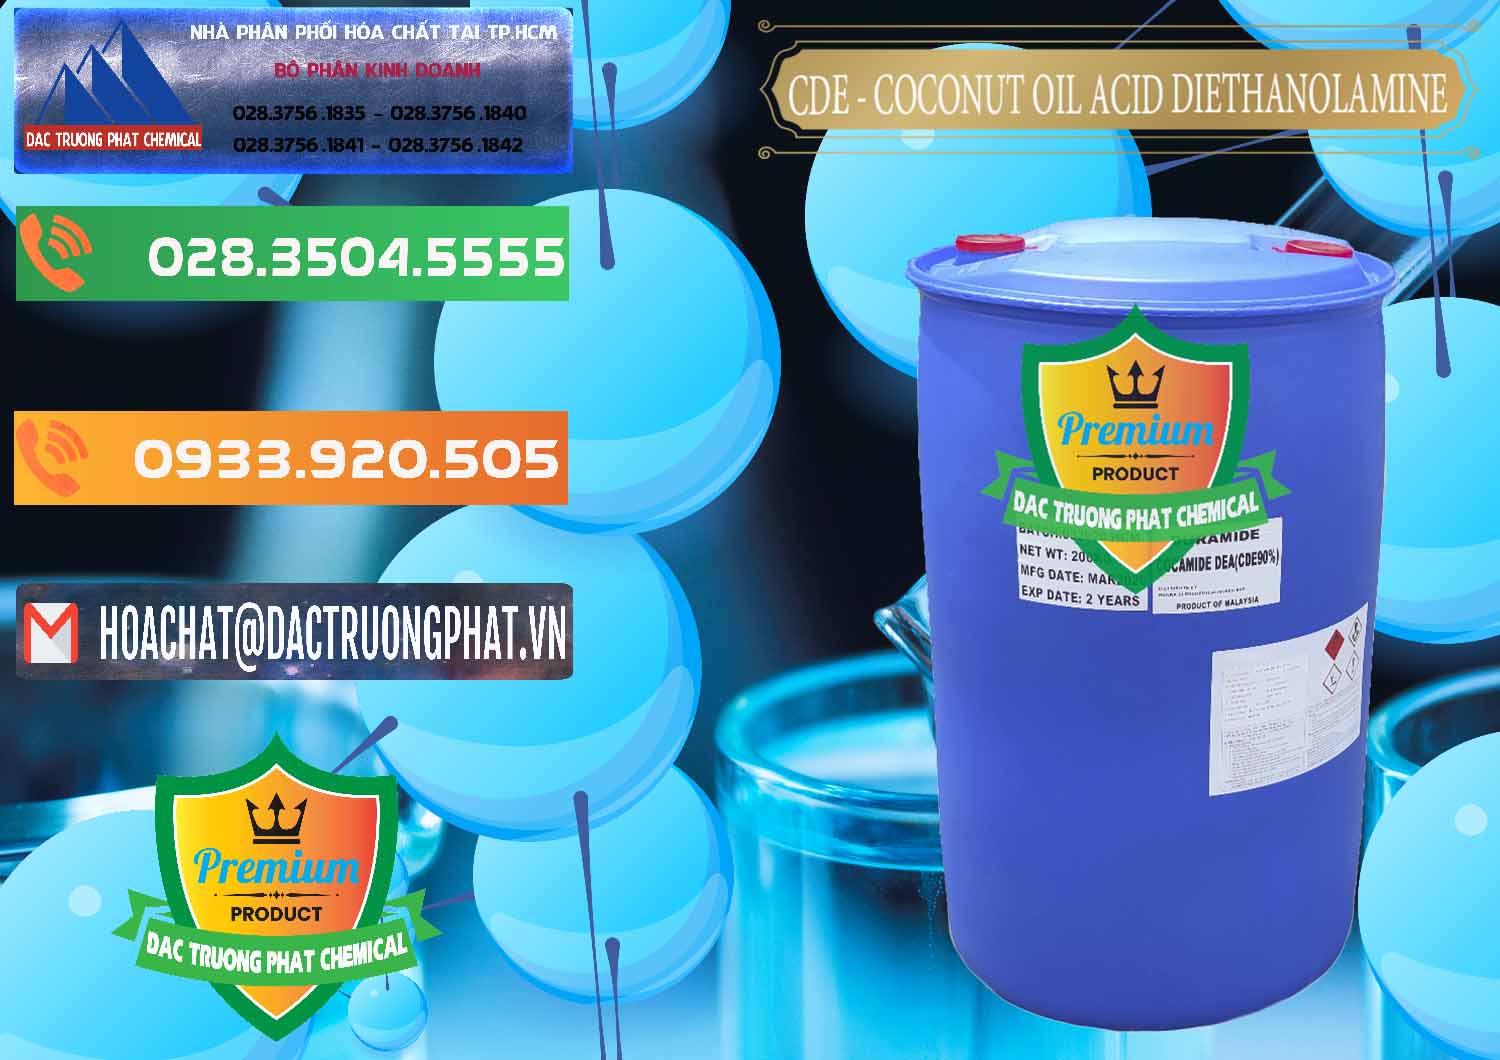 Cty bán - phân phối CDE - Coconut Oil Acid Diethanolamine Mã Lai Malaysia - 0311 - Đơn vị cung cấp và nhập khẩu hóa chất tại TP.HCM - hoachatxulynuoc.com.vn